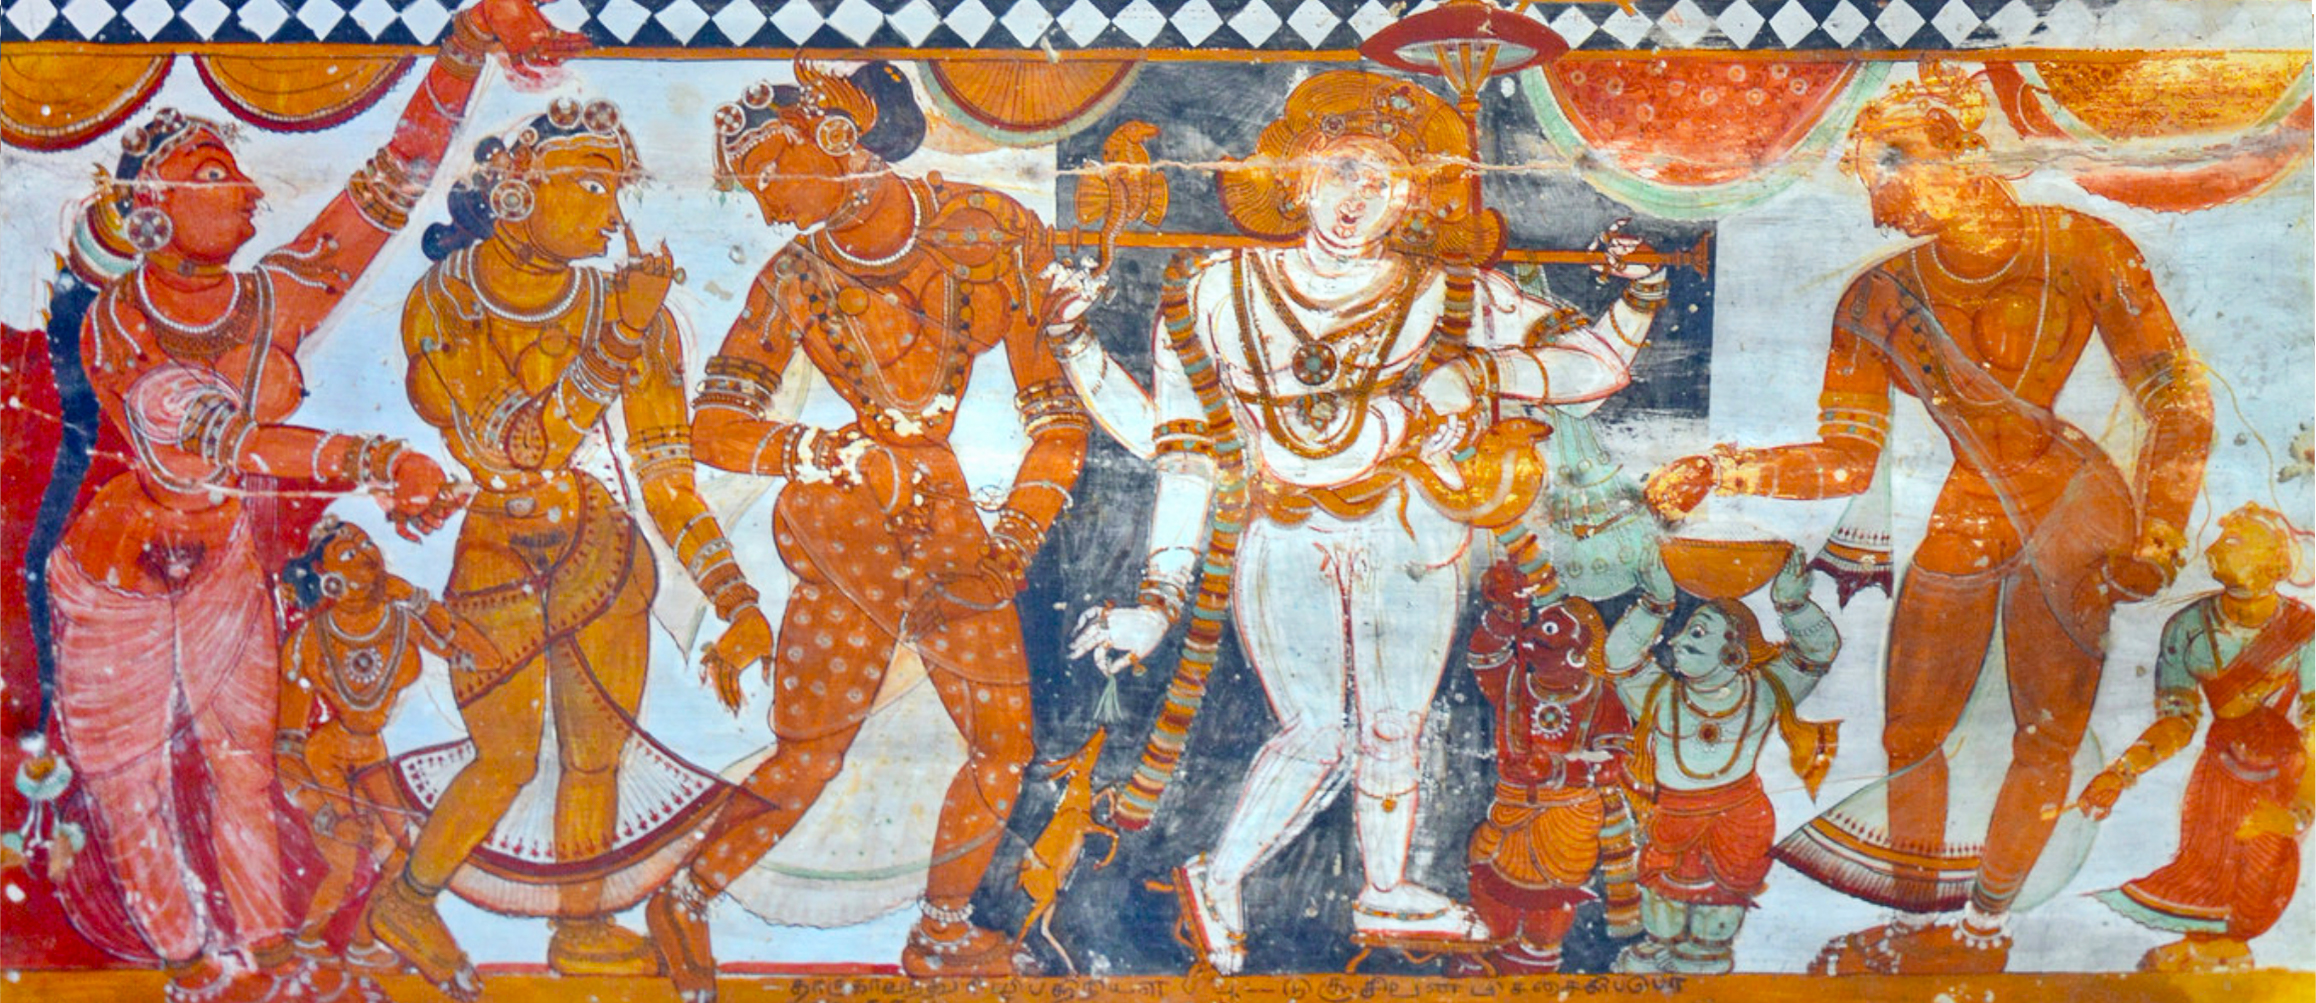 detail of a ceiling mural at Shivakamasundari temple in Chidamnaram